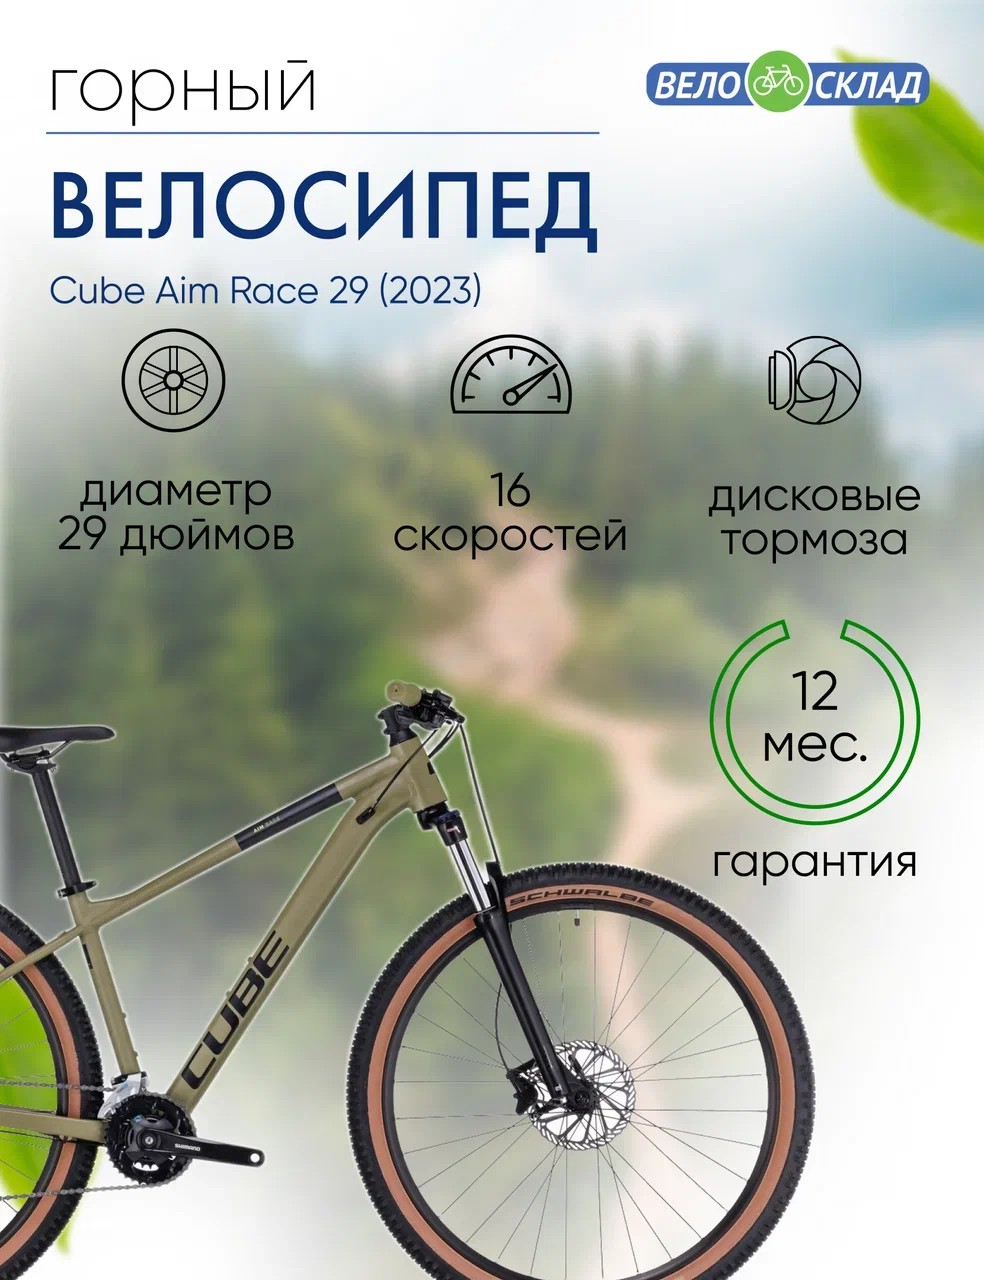 Горный велосипед Cube Aim Race 29, год 2023, цвет Зеленый-Черный, ростовка 22